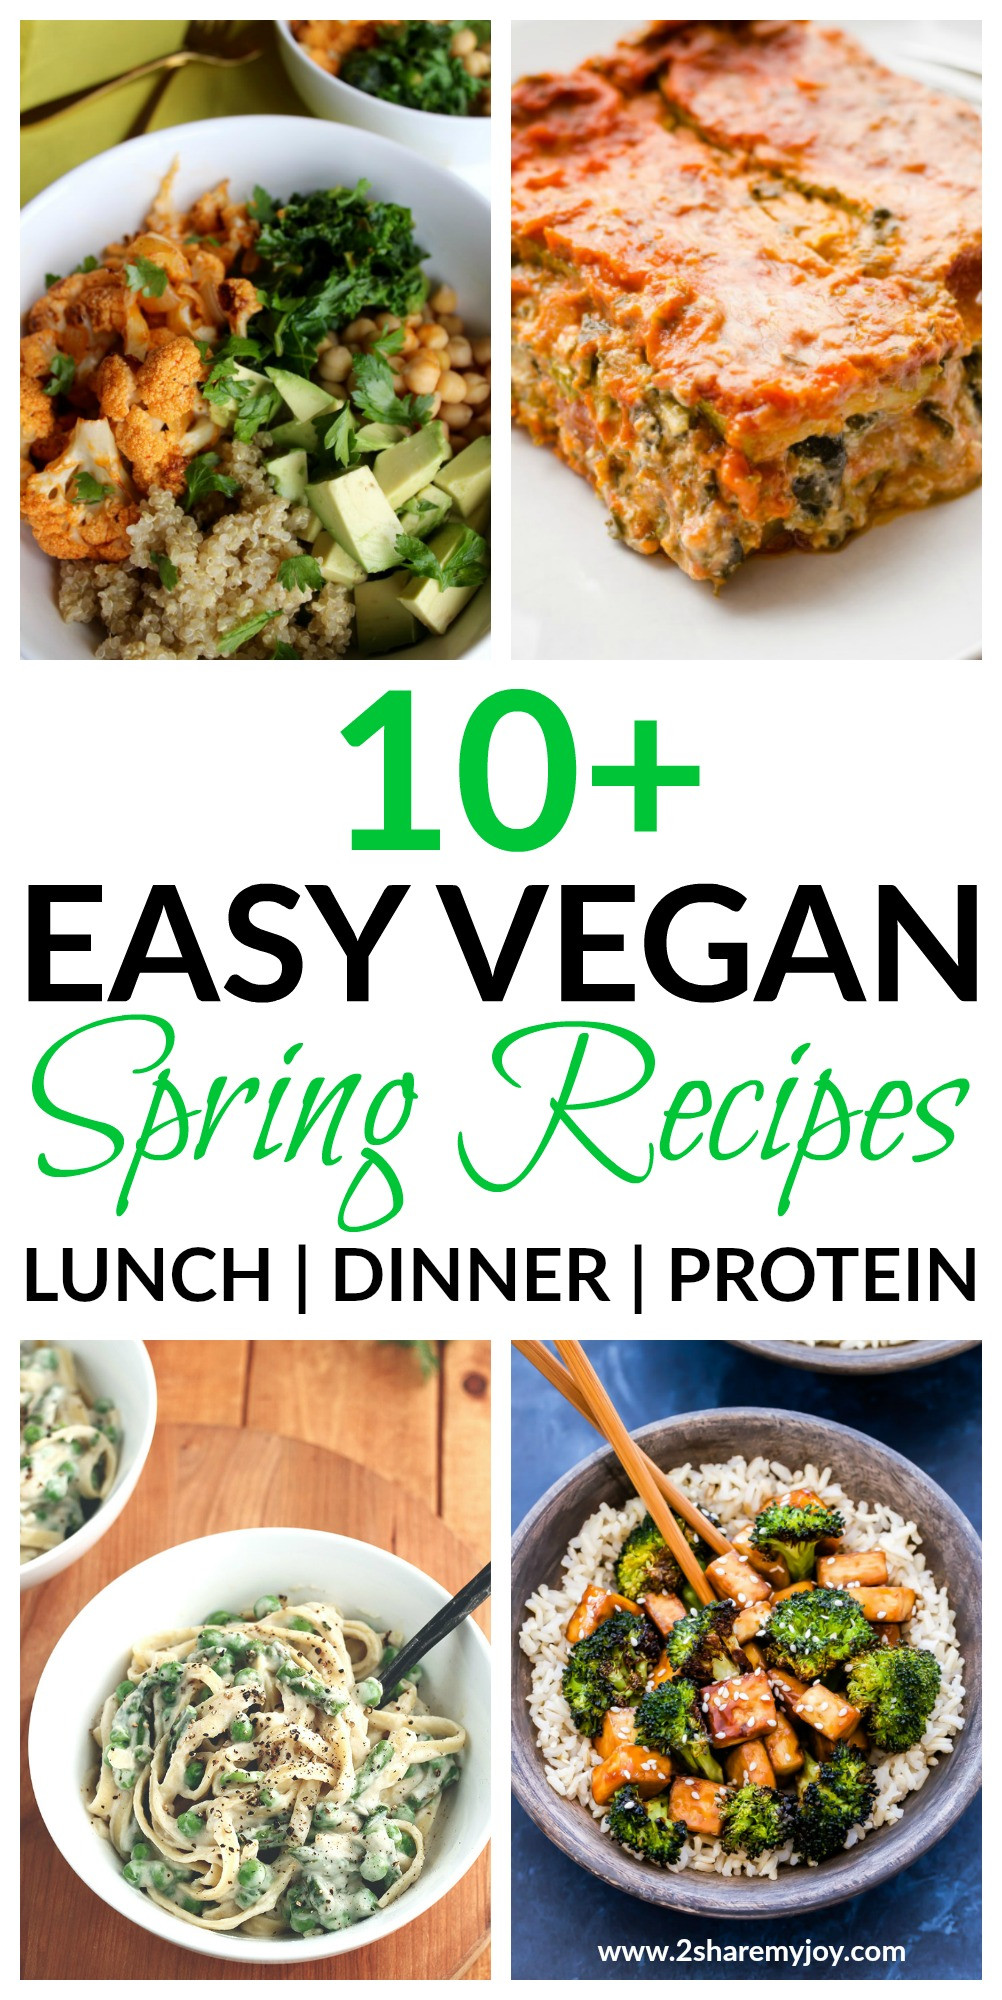 Spring Vegan Recipes
 20 Easy Vegan Spring Recipes for lunch or dinner